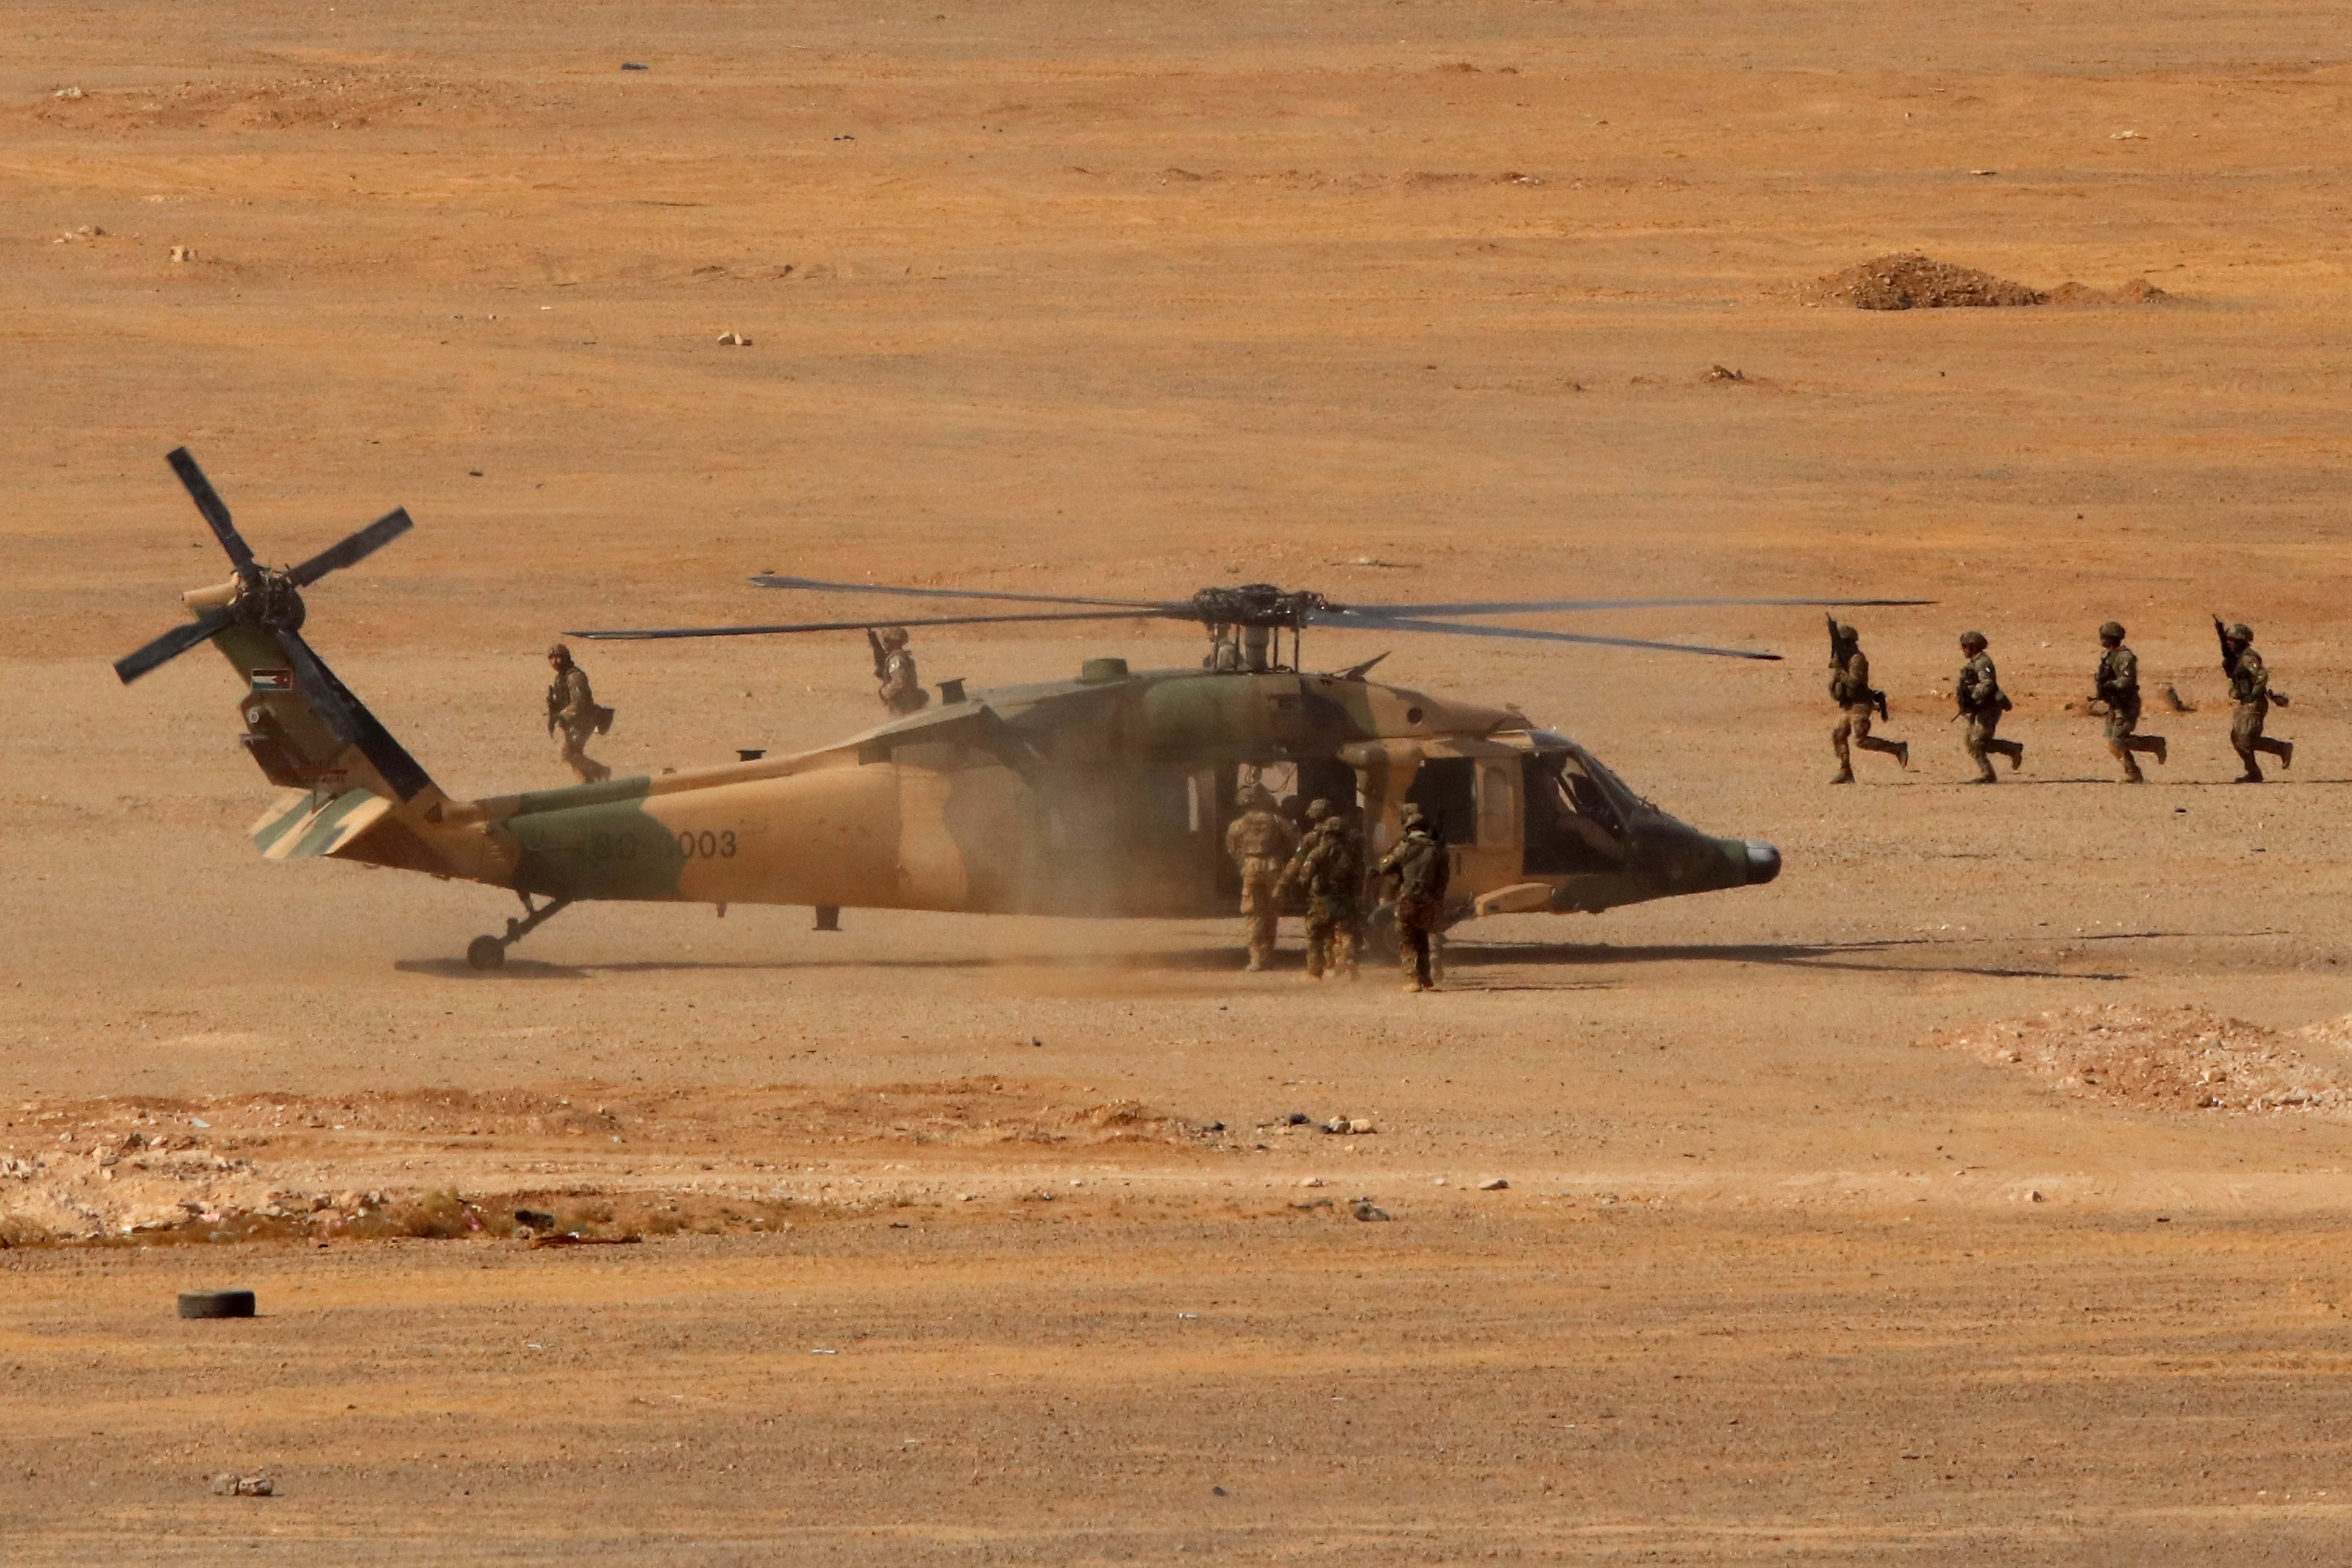 ZARQA, Sejumlah personel militer berpartisipasi dalam latihan gabungan bersandi Eager Lion di dekat Kota Zarqa, Yordania, pada 14 September 2022. Latihan gabungan tahunan bersandi Eager Lion yang diadakan oleh Angkatan Bersenjata Yordania mulai digelar pada Minggu (11/9) di negara kerajaan tersebut dengan partisipasi 26 pasukan militer asing. Lebih dari 4.000 personel militer dan 1.000 warga sipil berpartisipasi dalam latihan yang diadakan hingga 15 September itu, lapor stasiun televisi milik pemerintah Al-Mamlaka TV, melansir pernyataan Mustafa Al-Hiyari, juru bicara latihan militer tersebut. (Xinhua/Mohammad Abu Ghosh)